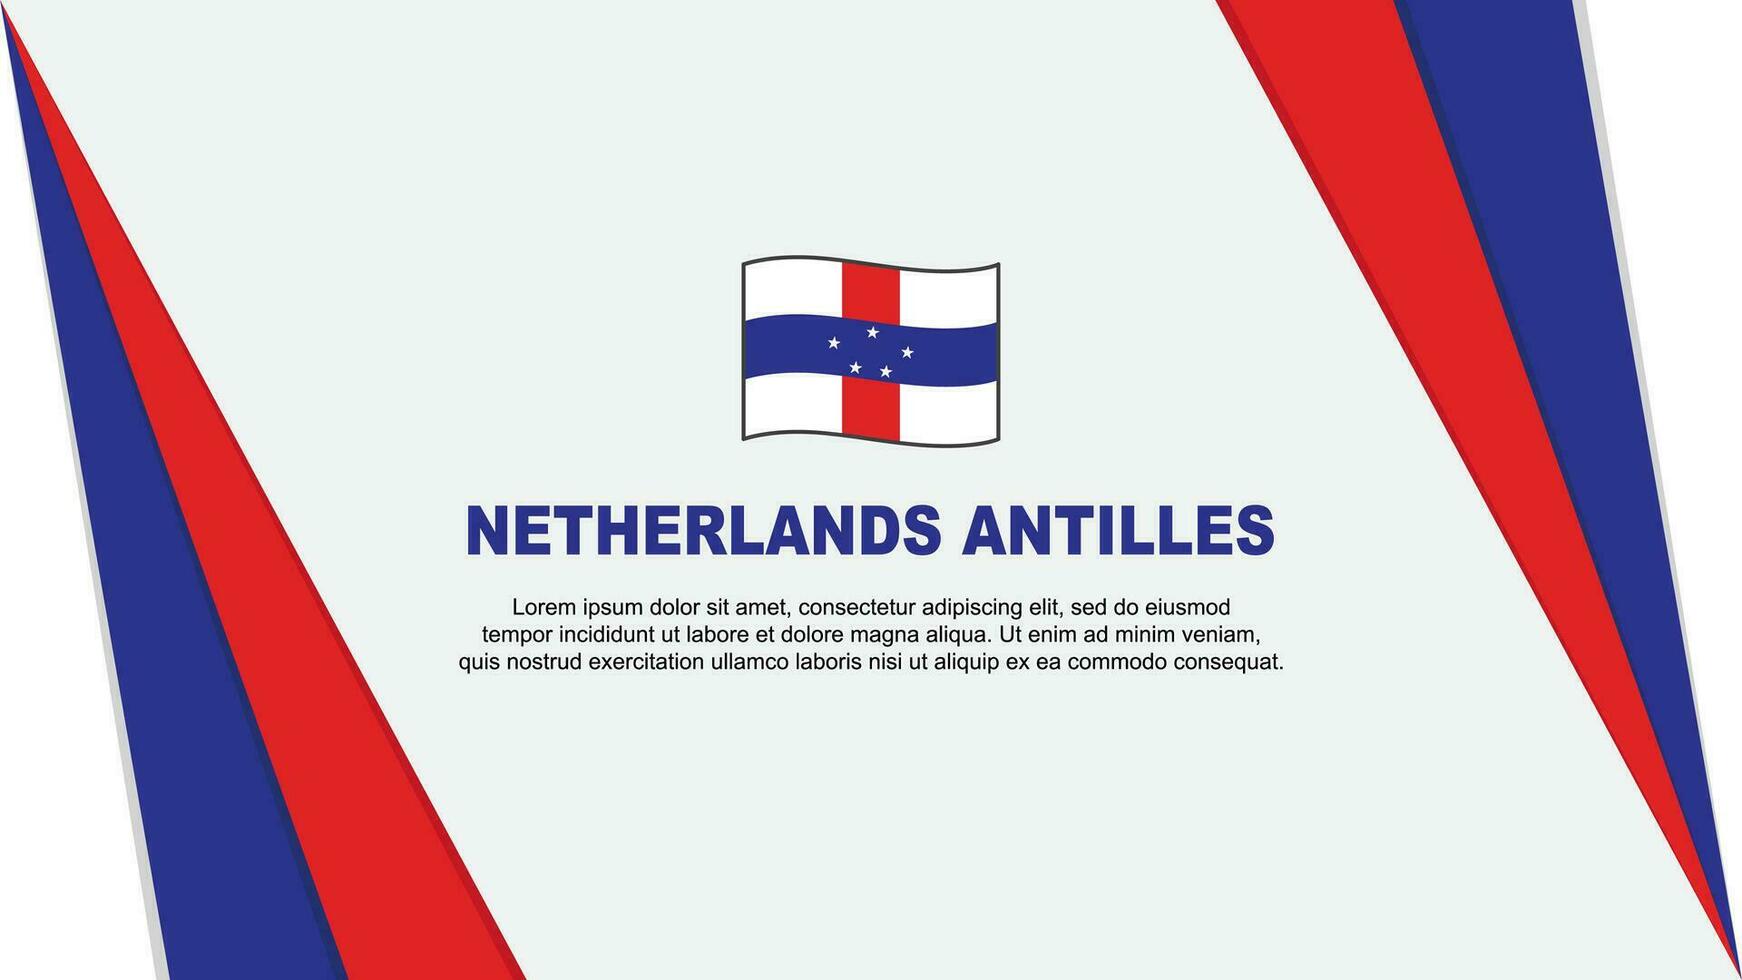 Netherlands Antilles Flag Abstract Background Design Template. Netherlands Antilles Independence Day Banner Cartoon Vector Illustration. Netherlands Antilles Flag